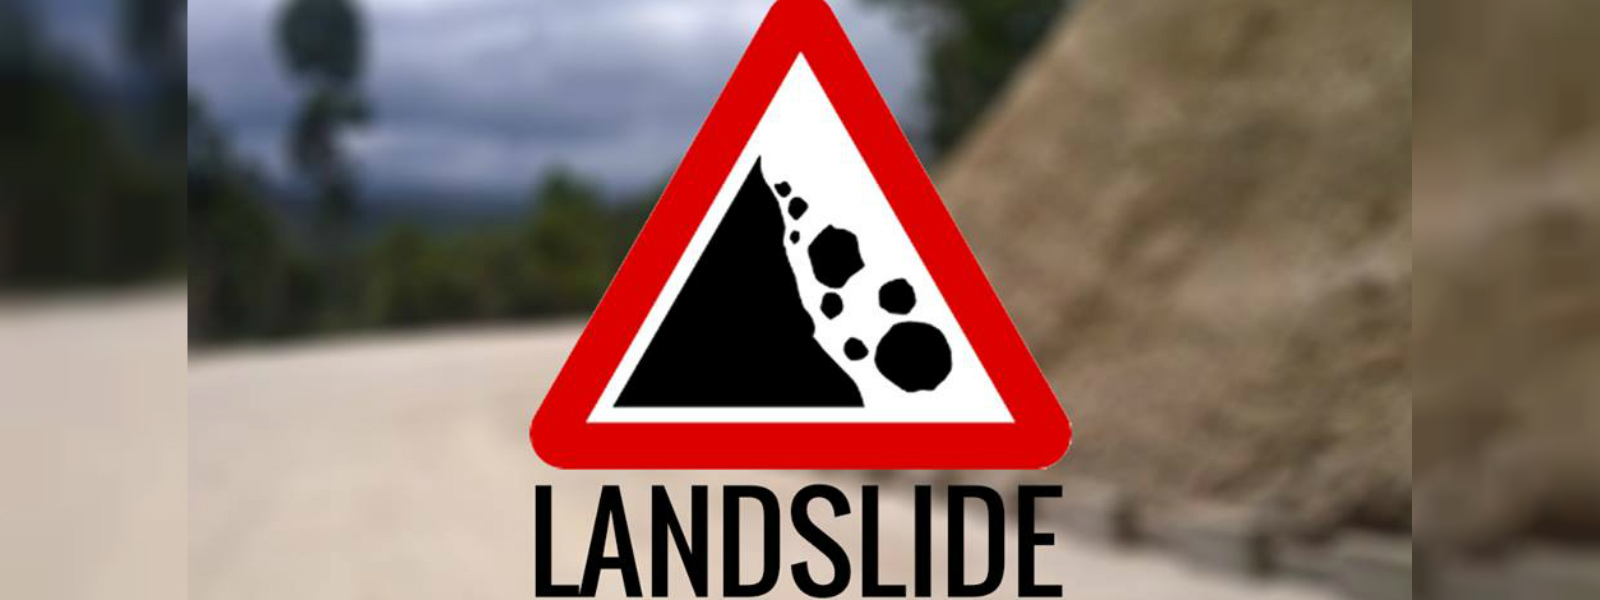 RED ALERT: Landslide warning for 3 districts